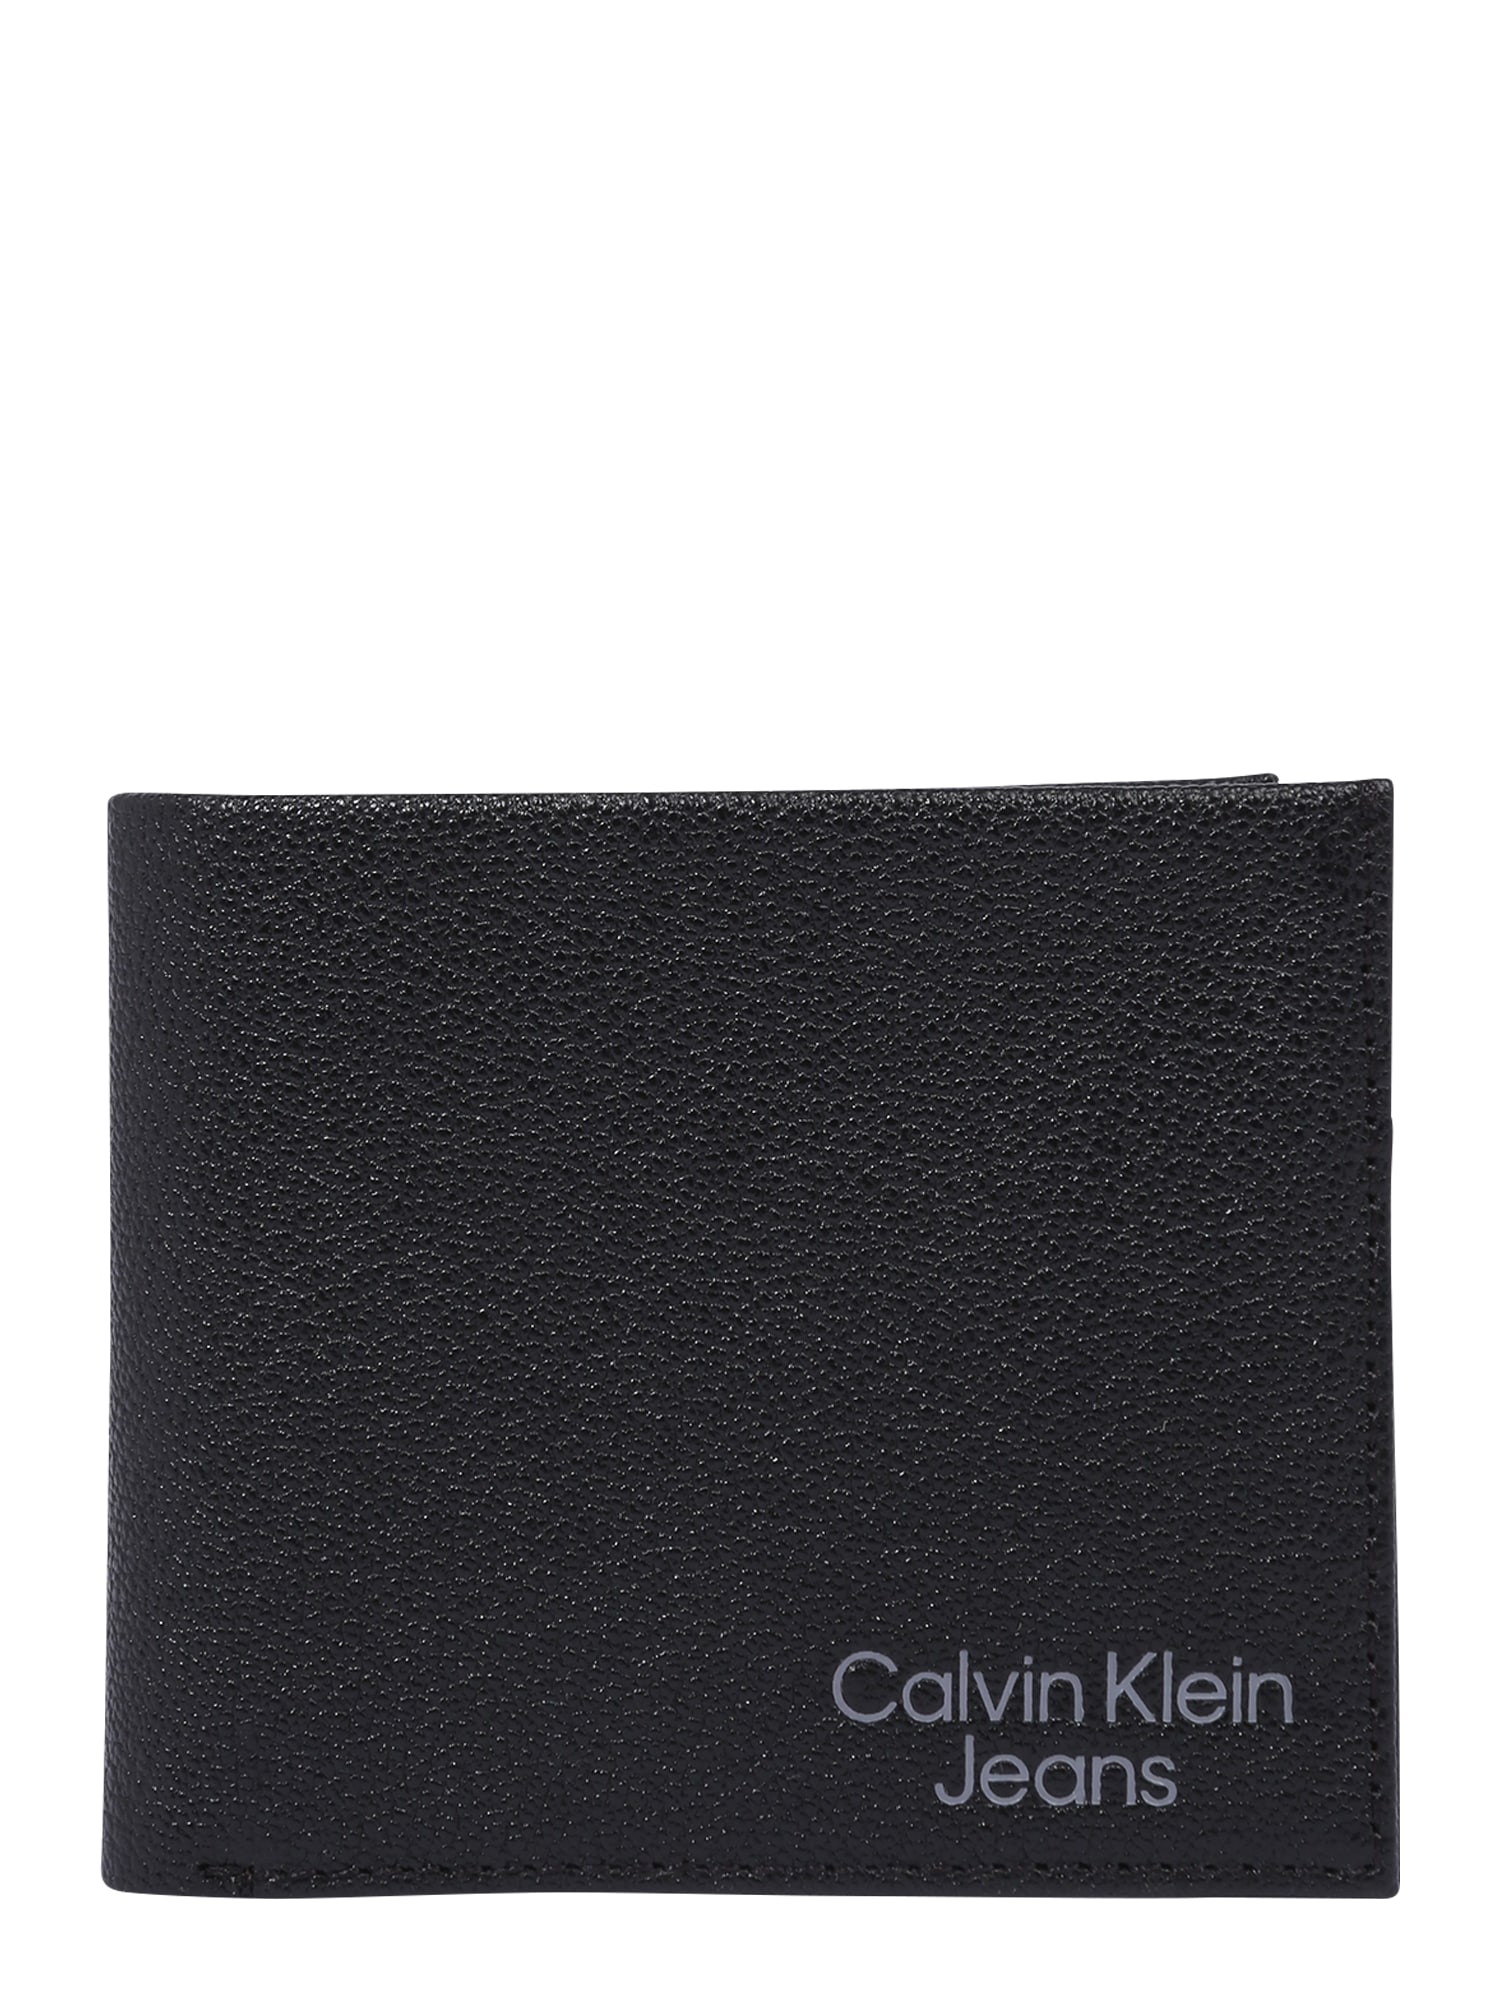 Portemonnaie von Calvin Klein Jeans